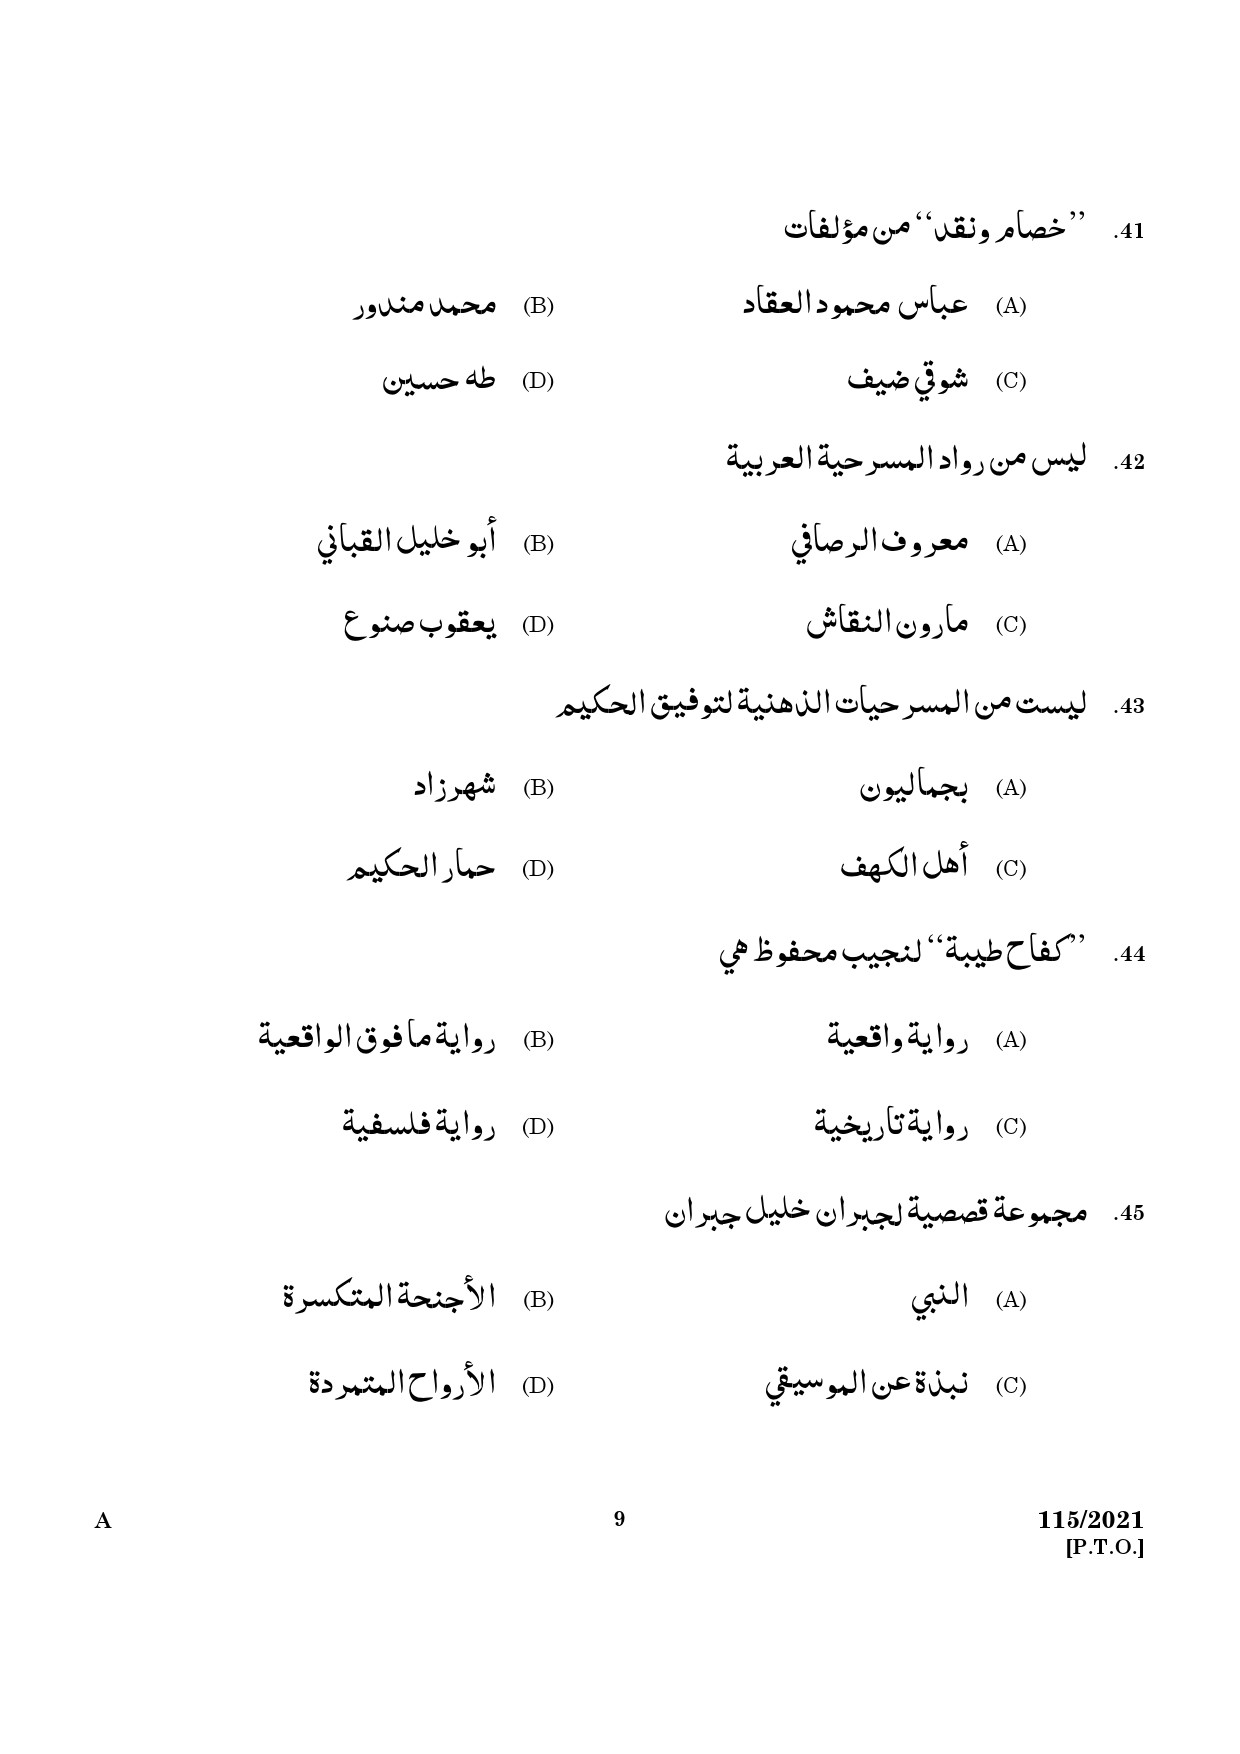 KPSC Part Time Junior Language Teacher Arabic Exam 2021 Code 1152021 7